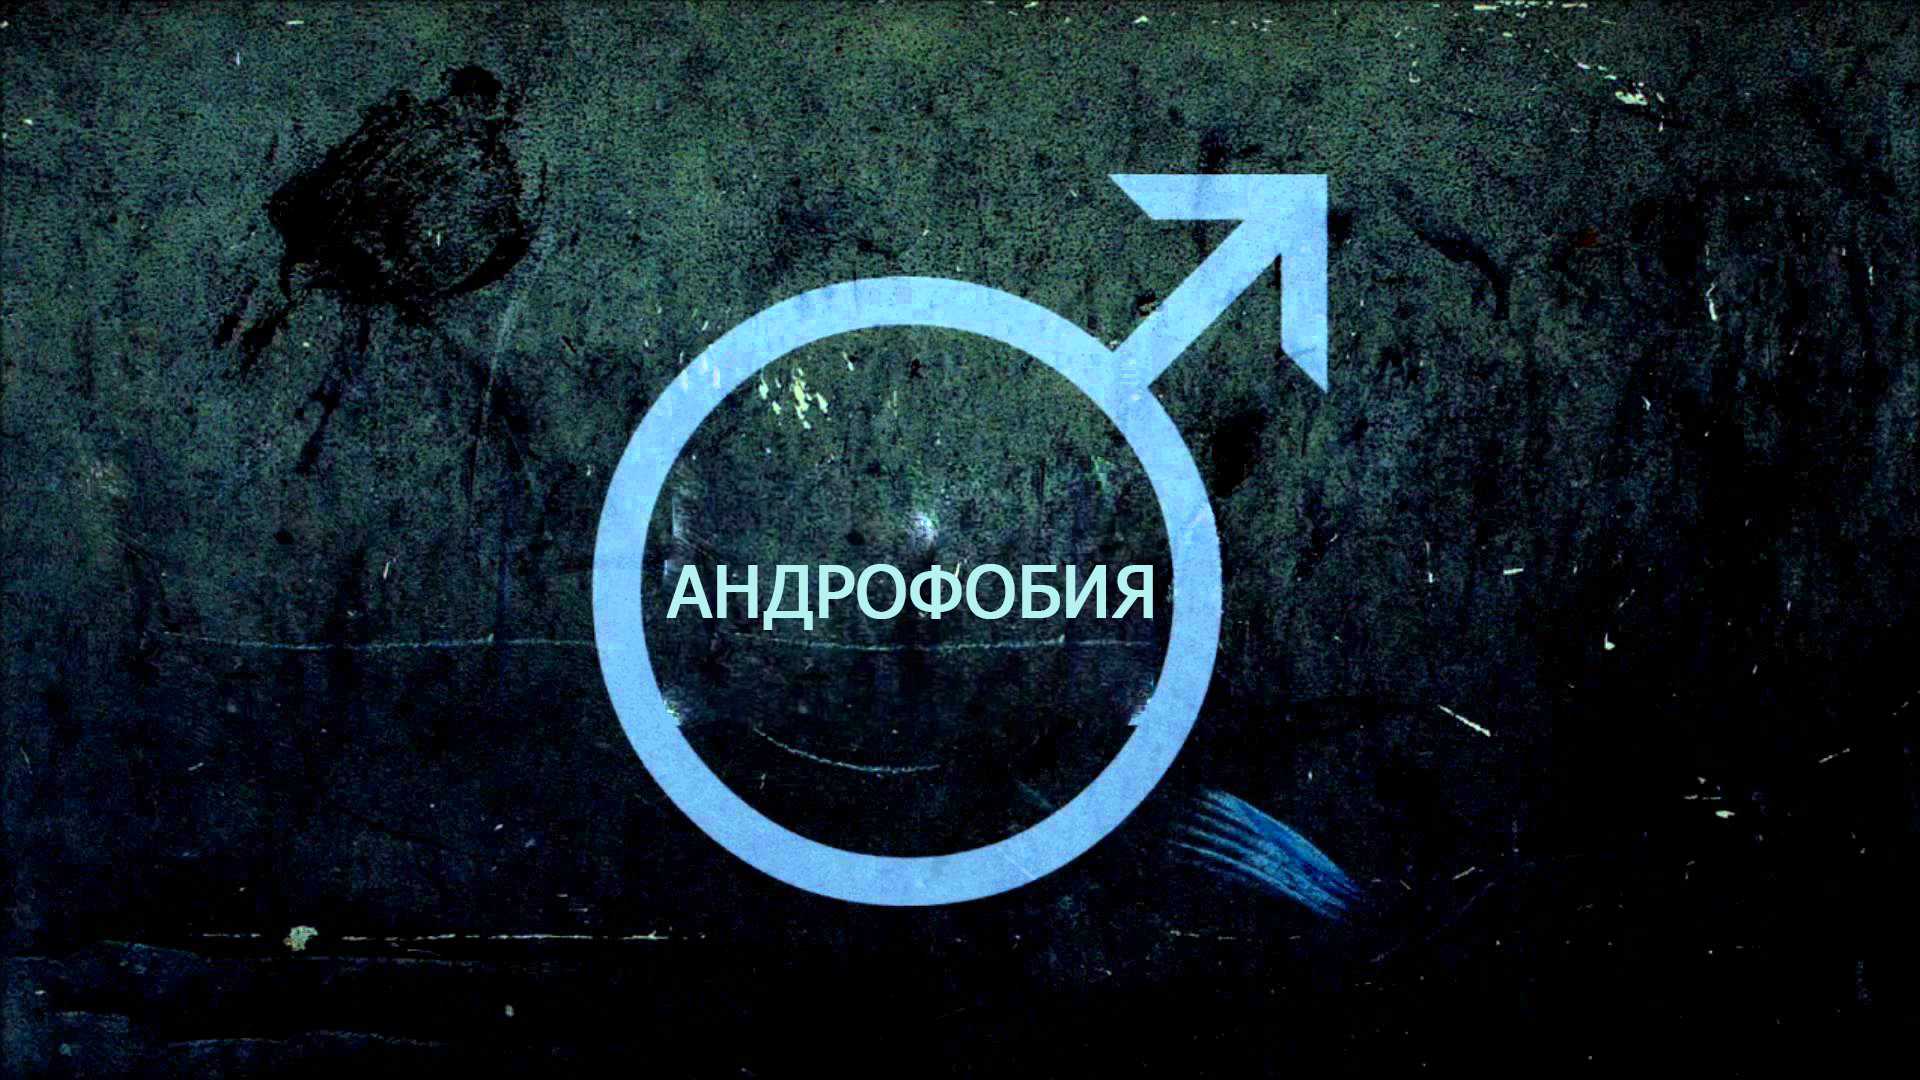 Гетерофобия - страх противоположного пола